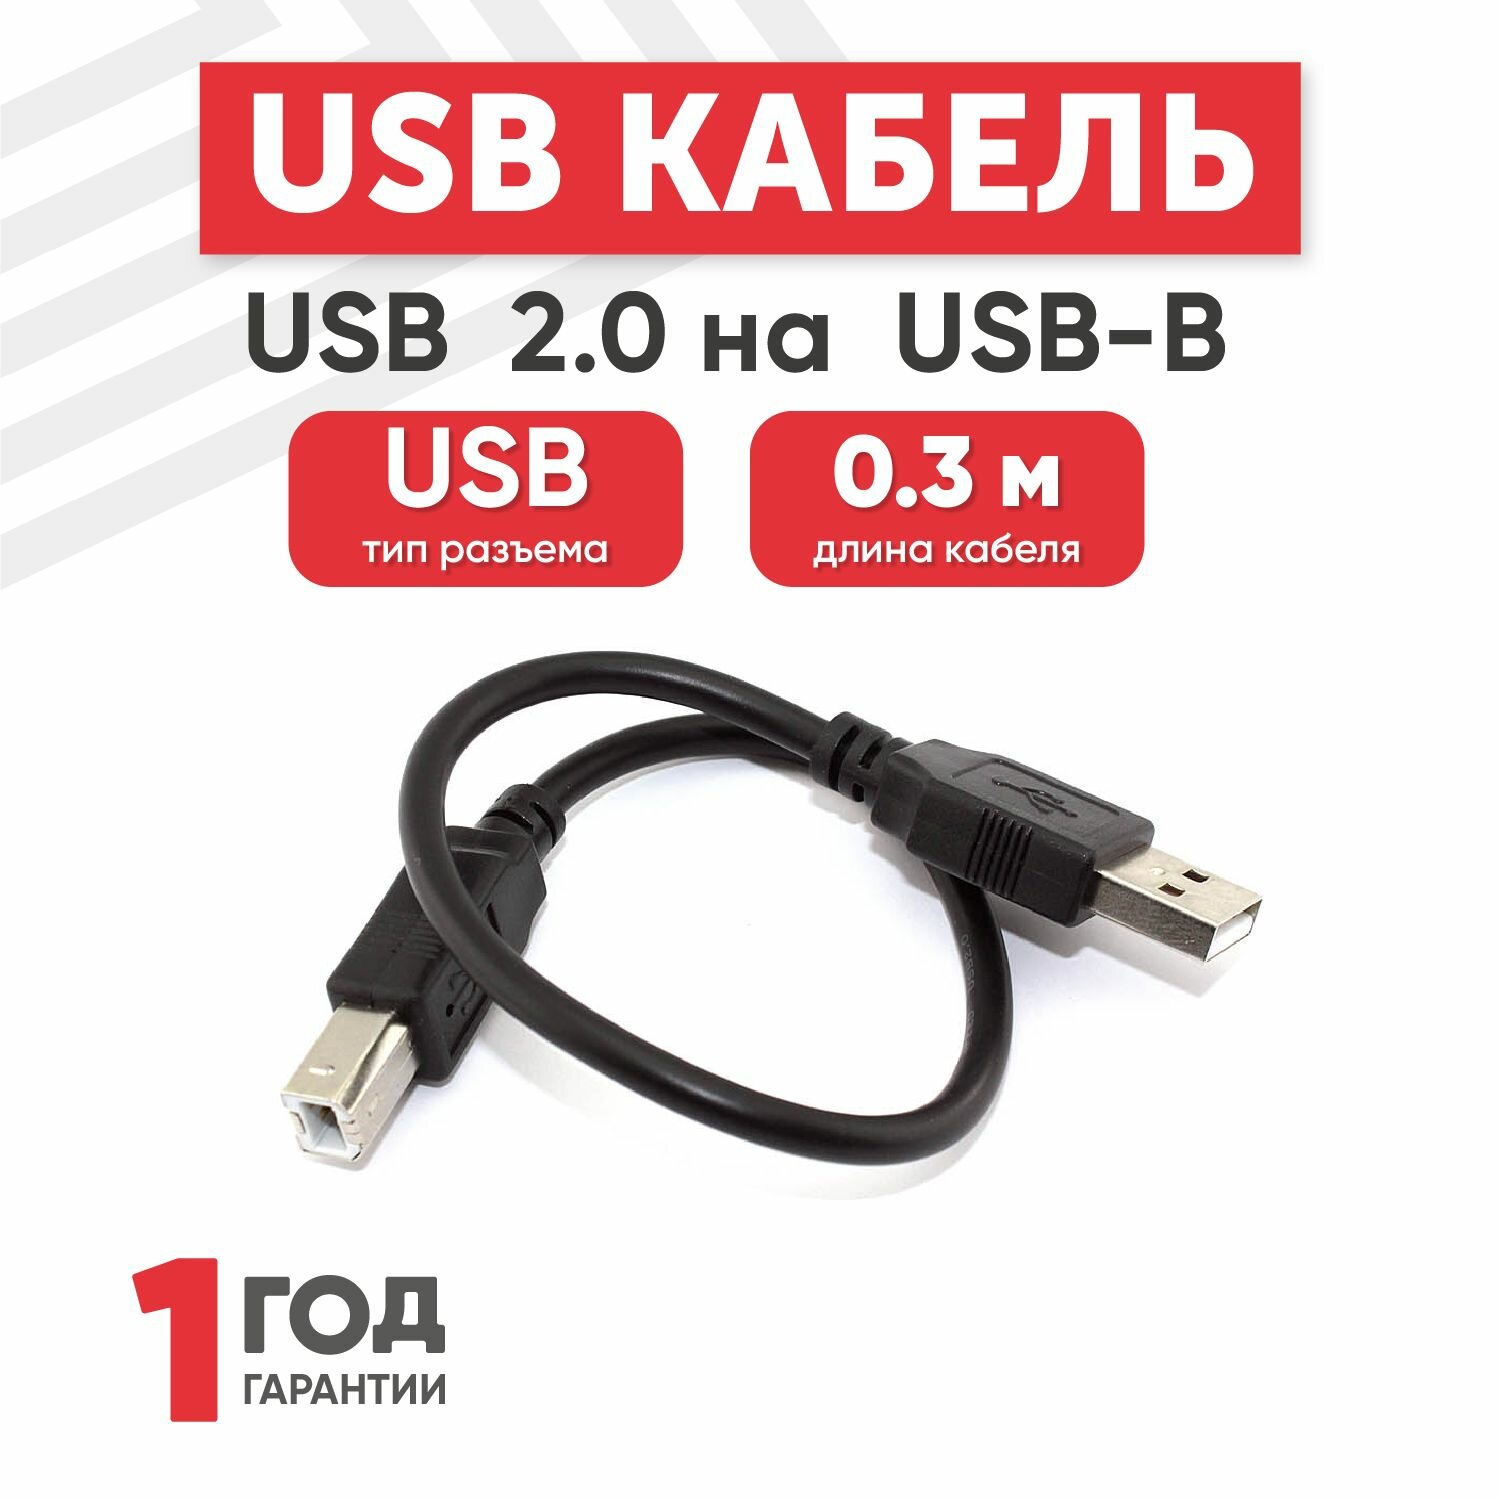 Кабель USB 2.0 на USB-B прямой, 0.3 метра